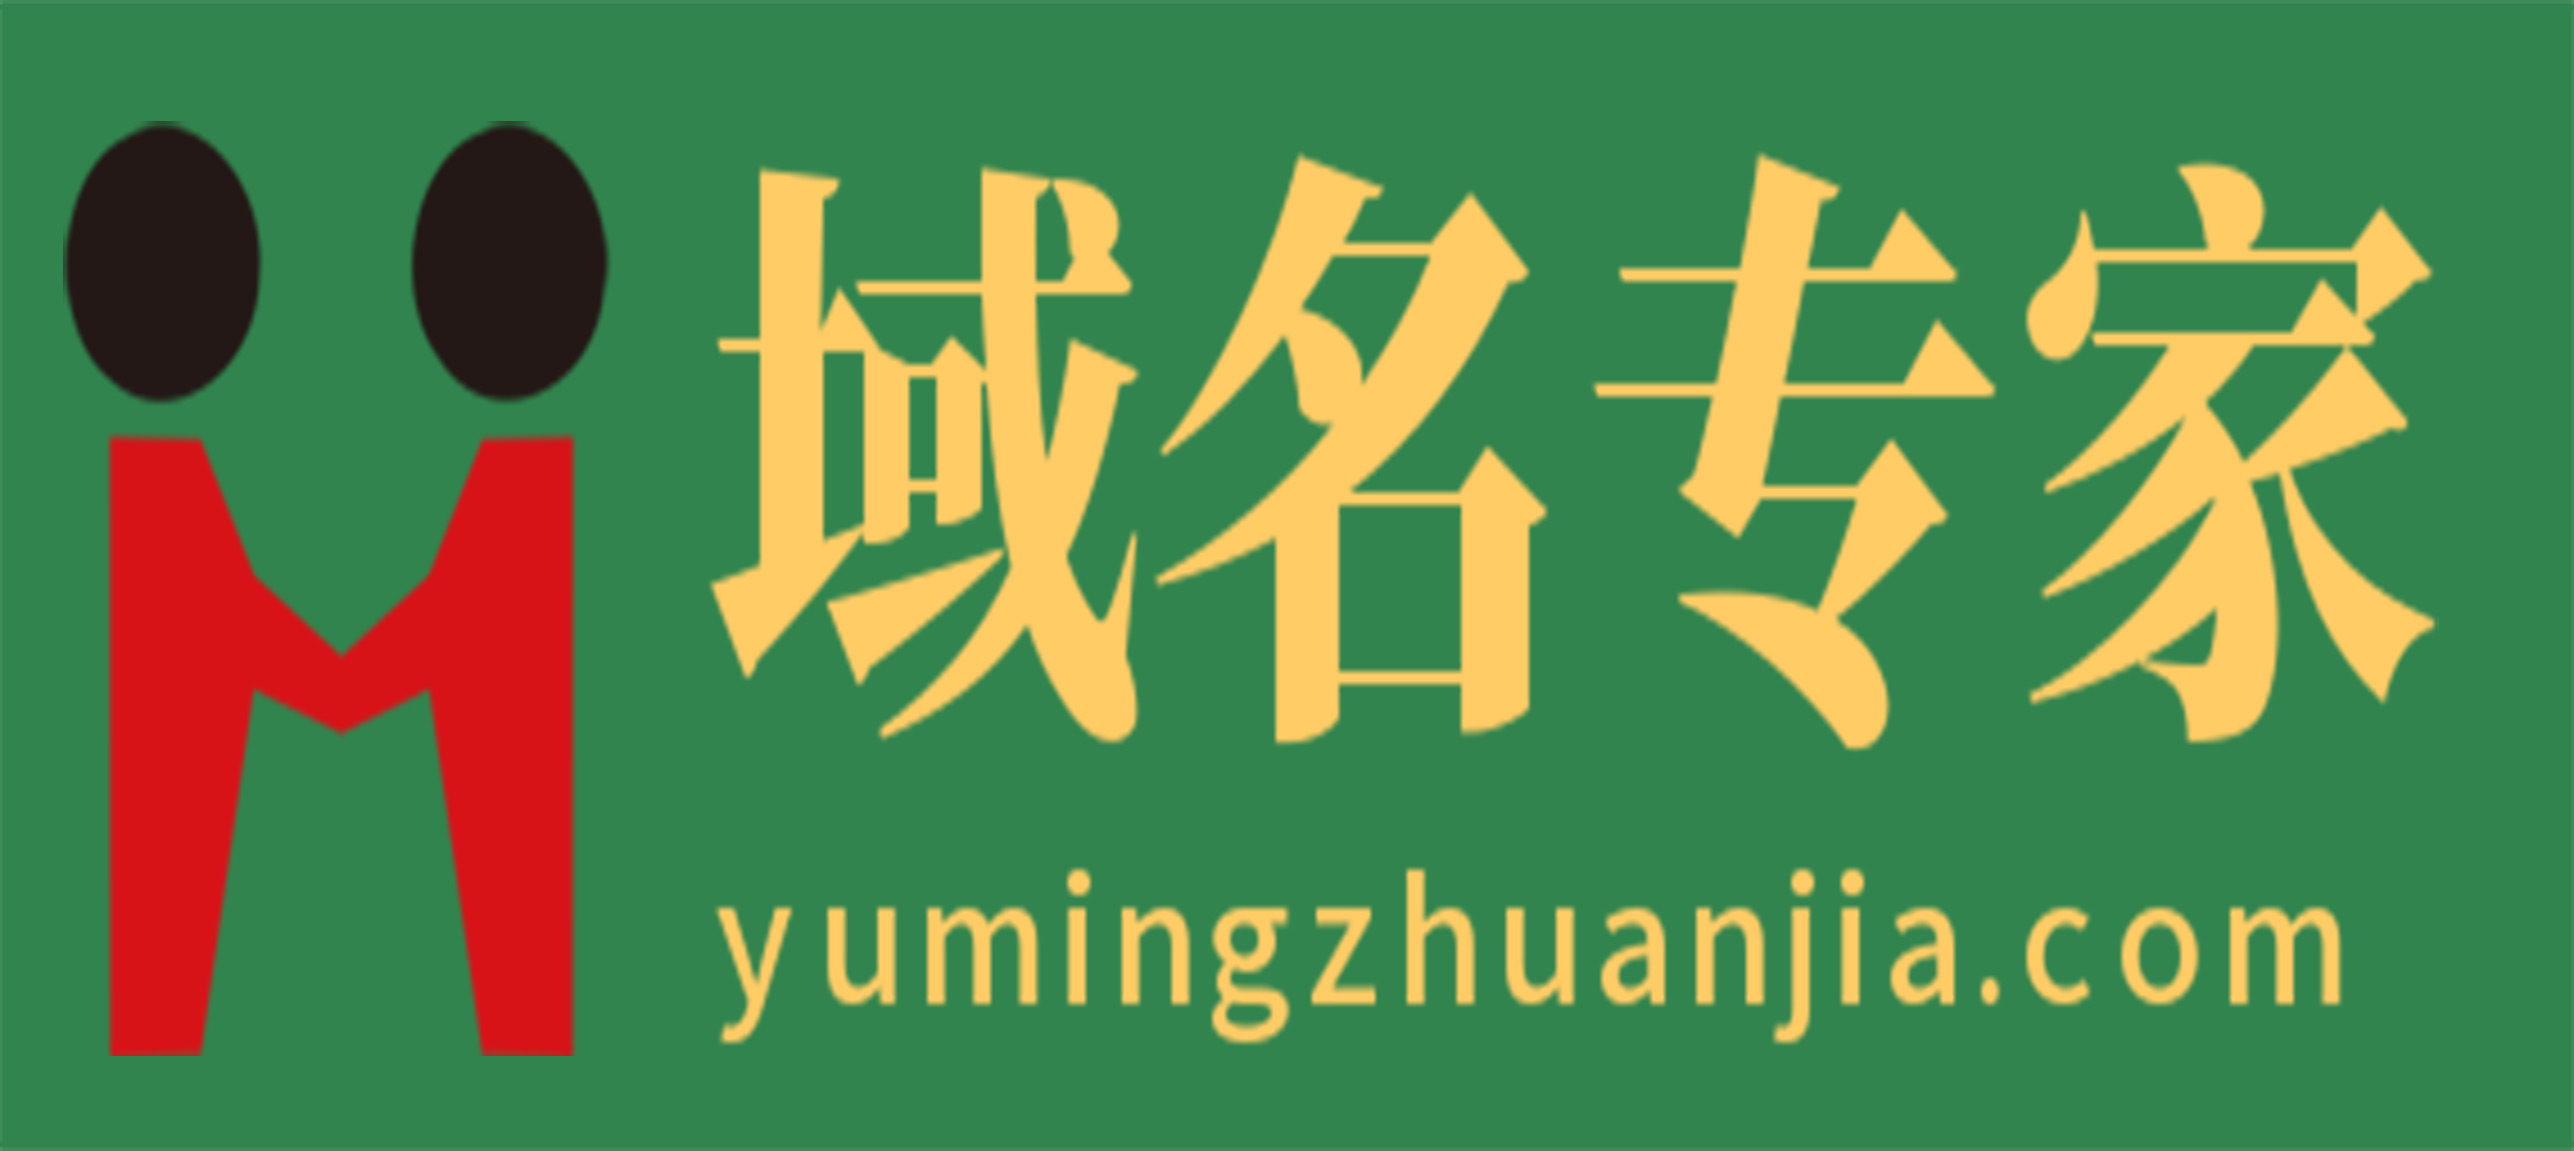 域名专家www.yumingzhuanjia.com-无论您是创业、品牌升级还是知识产权保护，域名专家都能帮您找到合适您的域名！